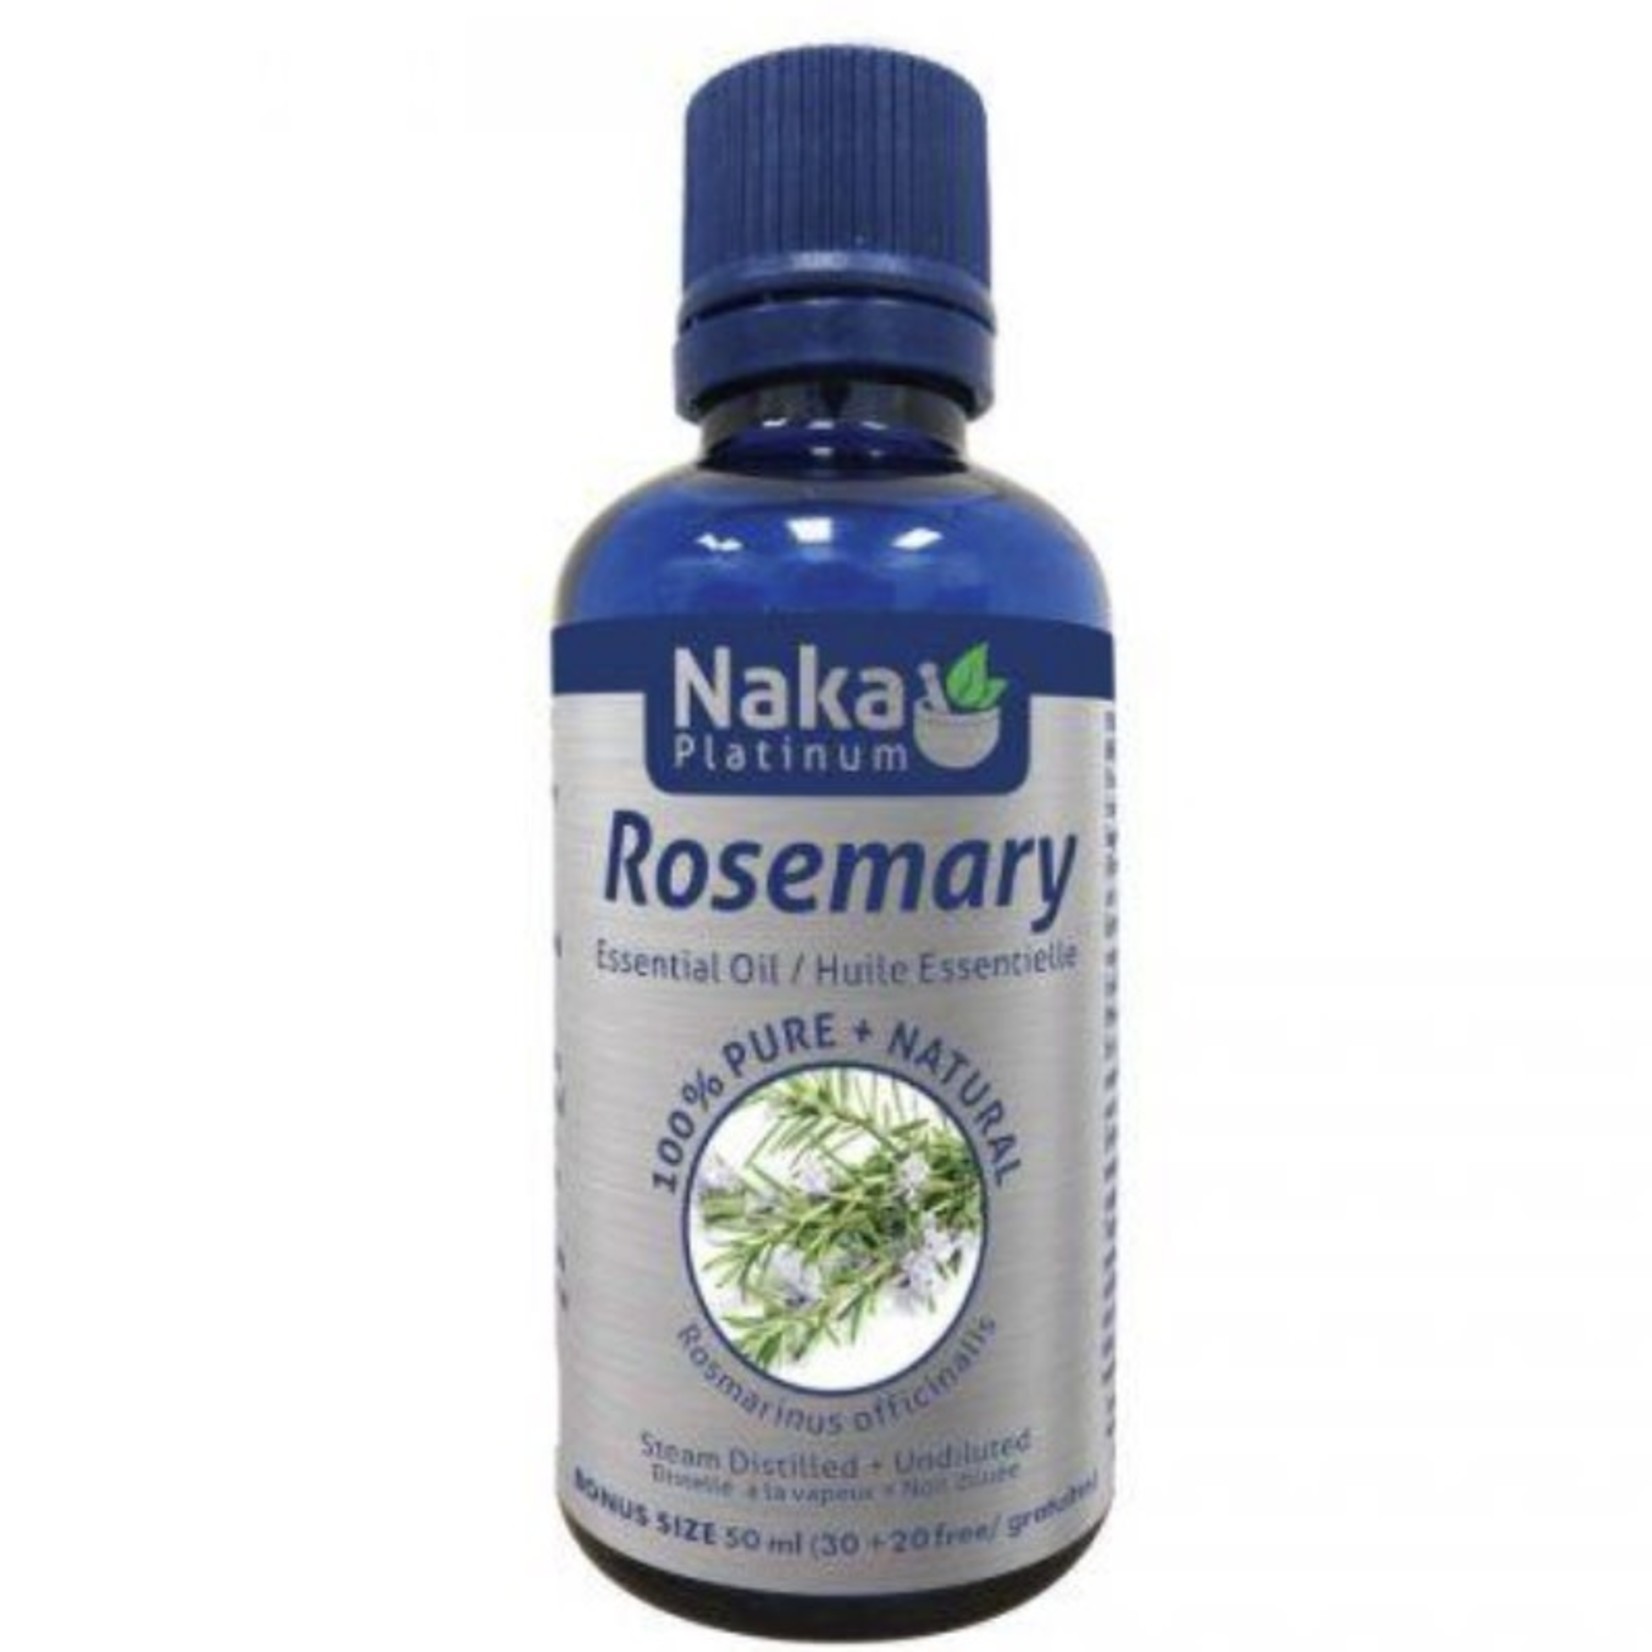 Naka Naka Rosemary Essential Oil 50ml